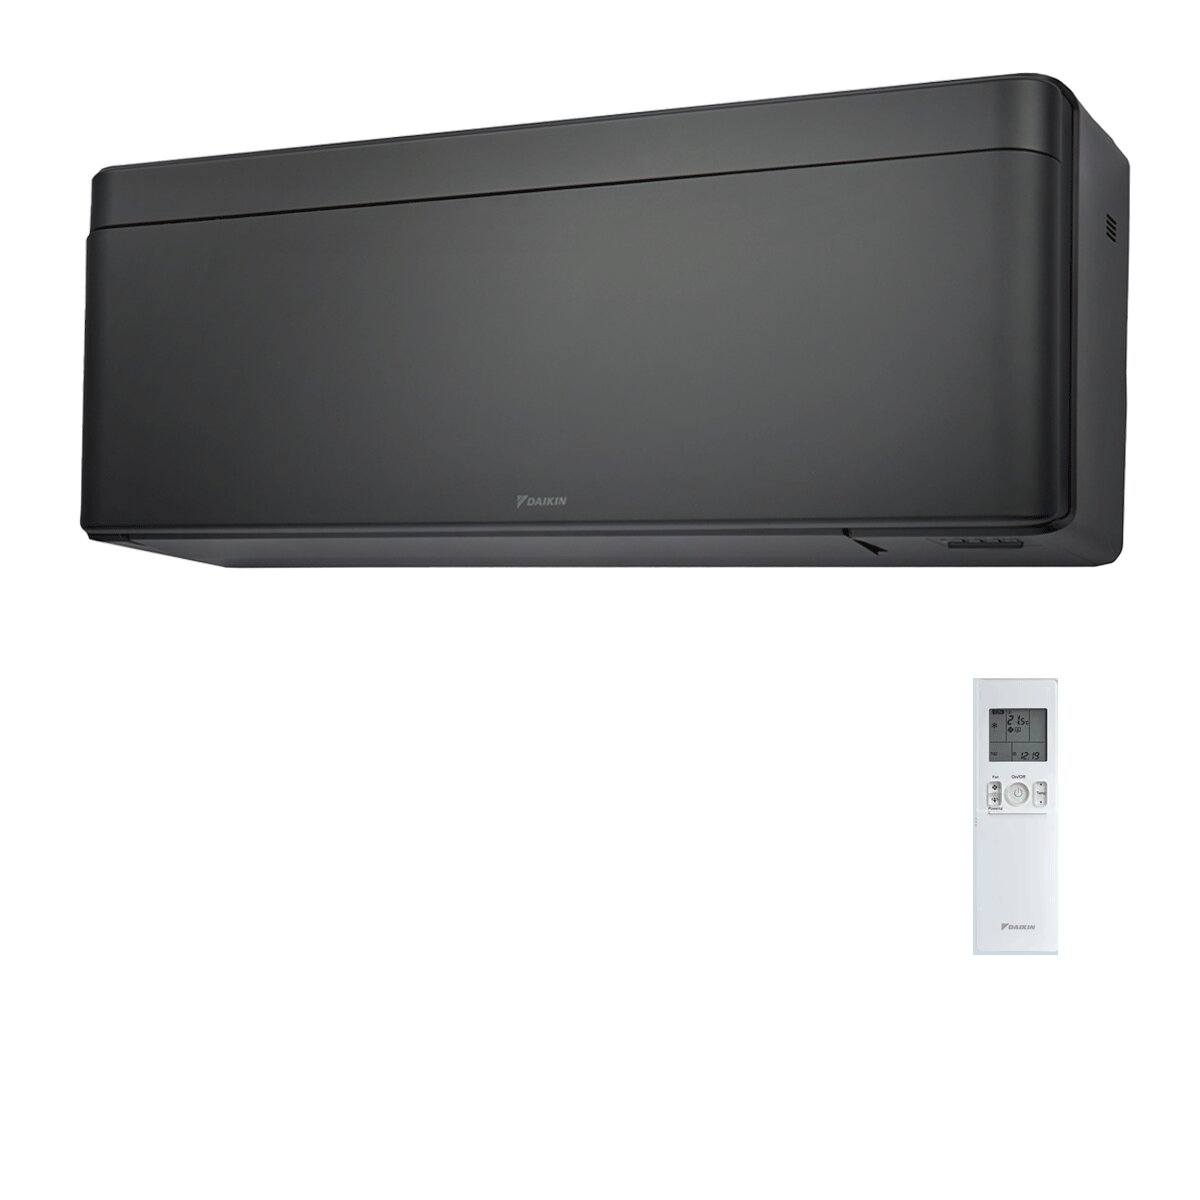 Daikin Stylish Total Black Klimaanlage 15000 BTU Inverter A++ WiFi R32